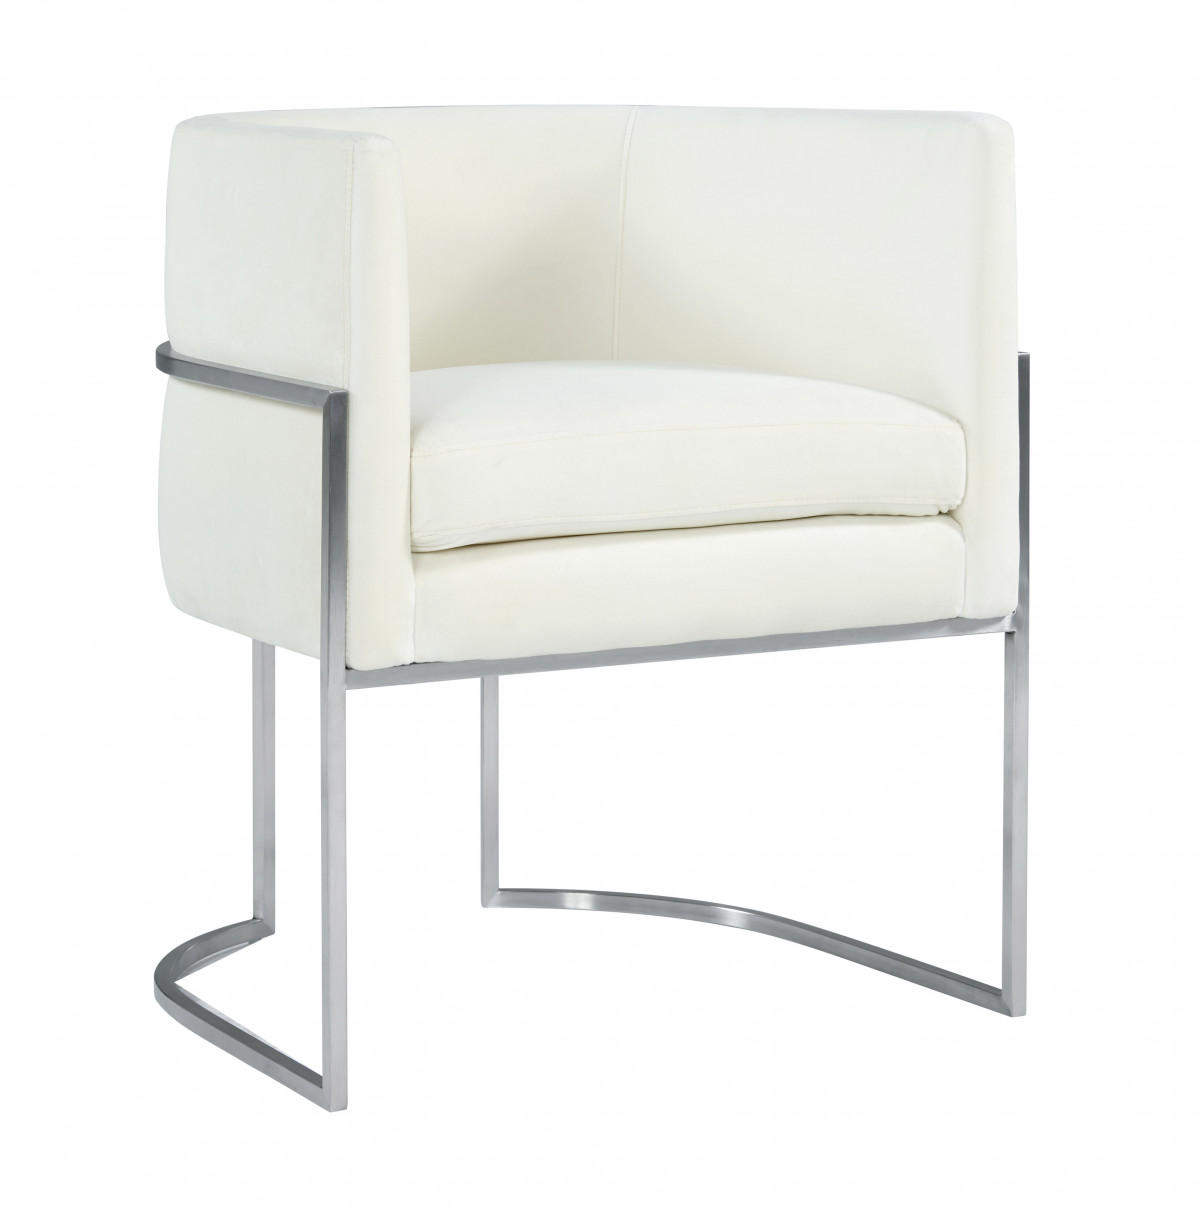 Shop Giselle Cream Velvet Dining Chair Silver Leg from DiMare Design on Openhaus